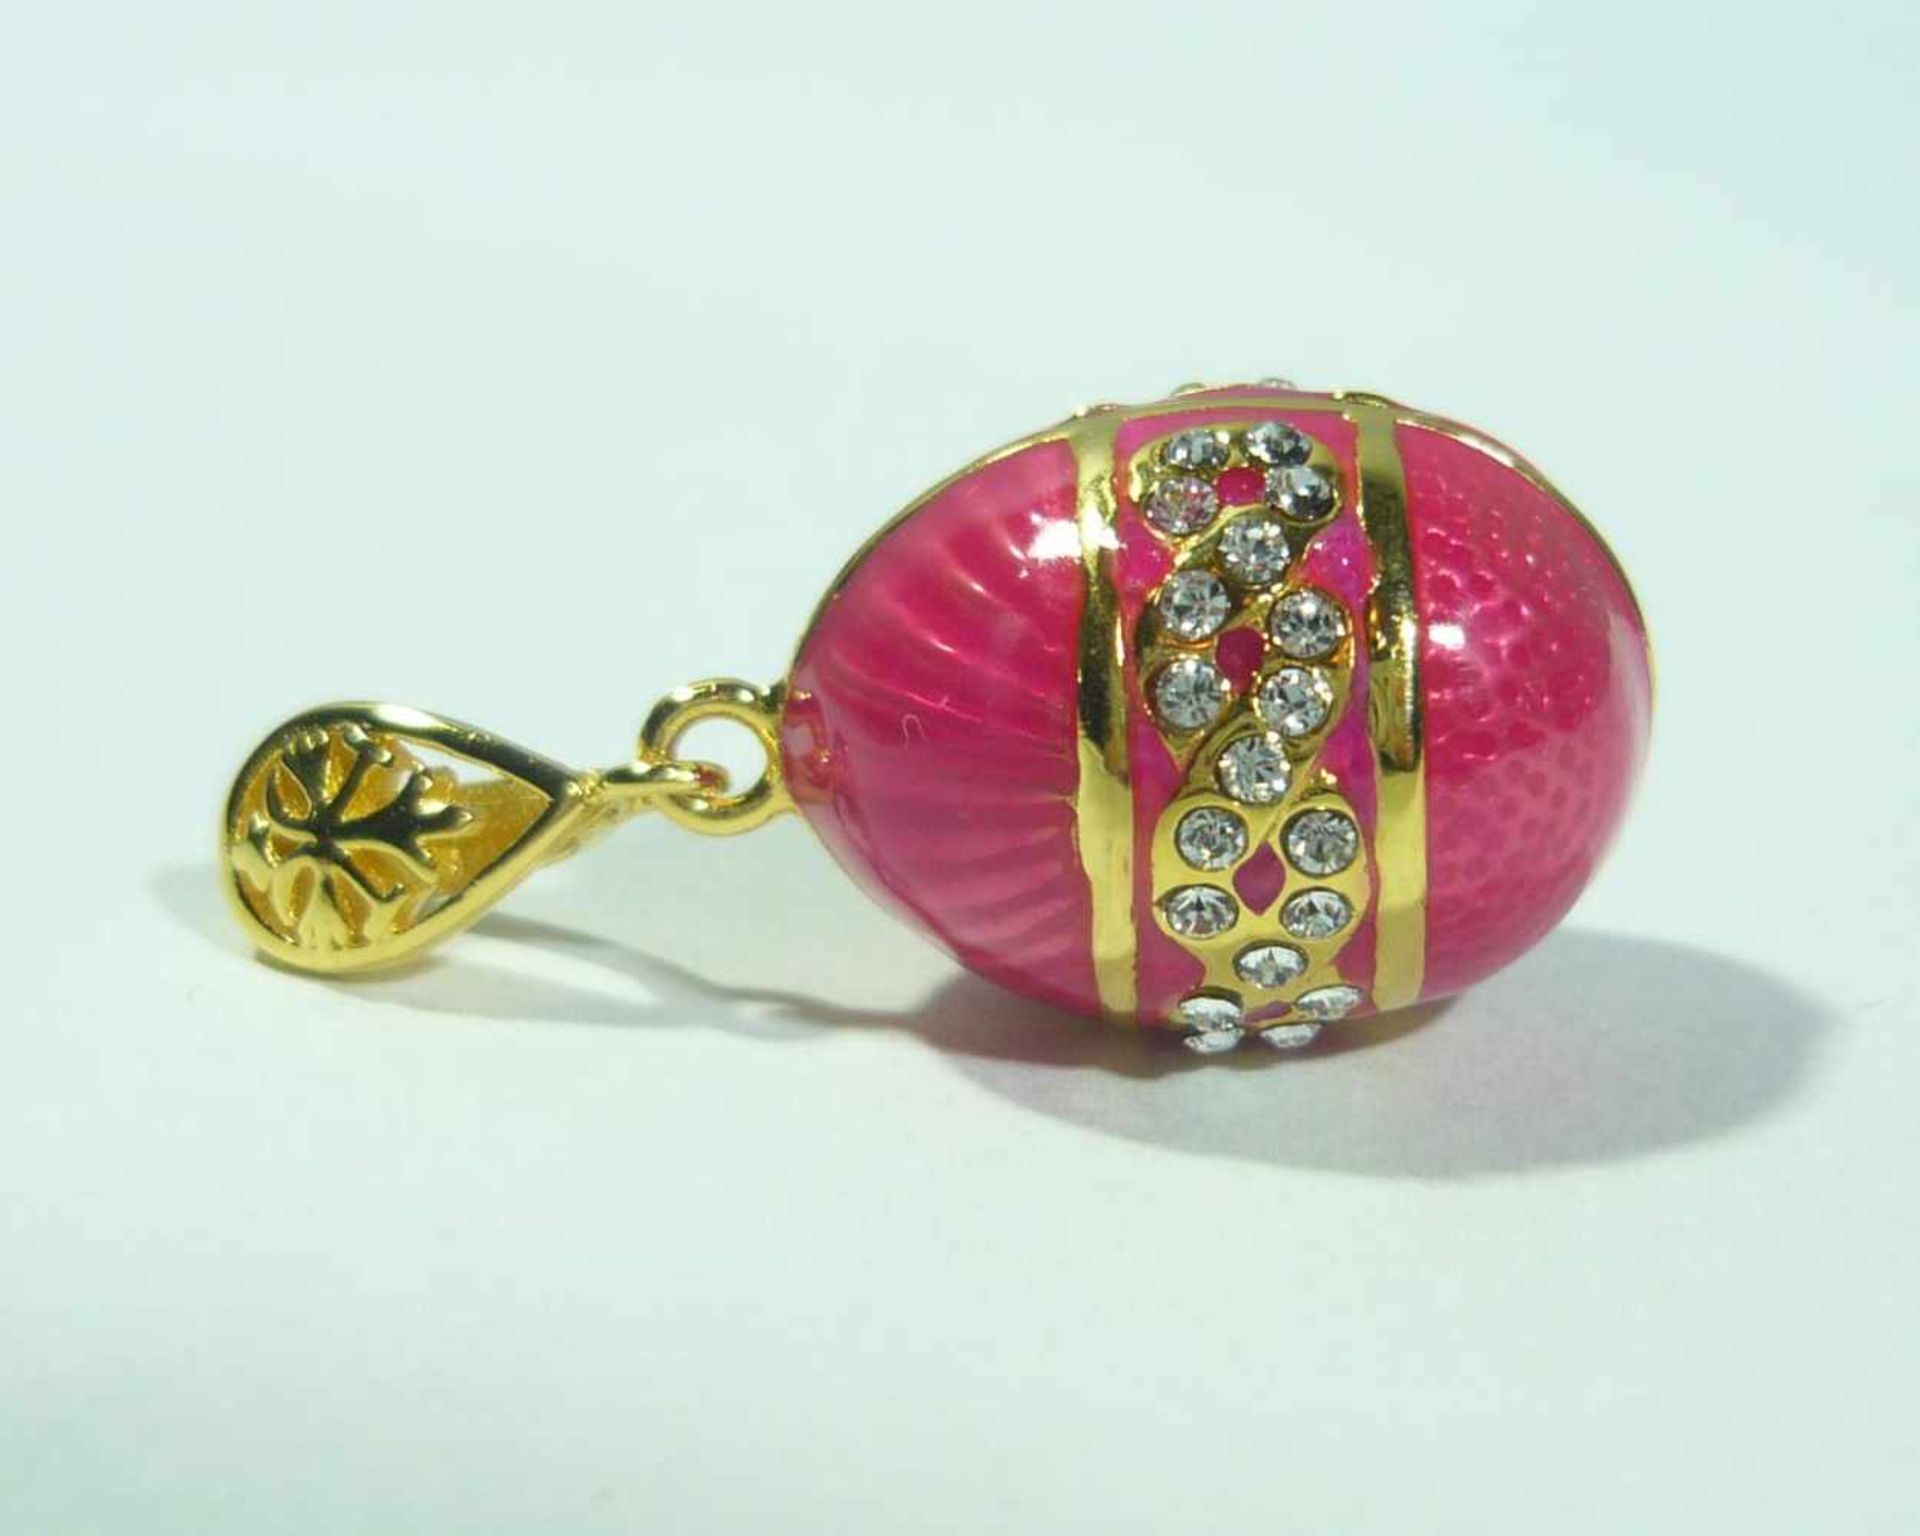 Rosa Ei mit umlaufender Verzierung. Kettenanhänger in russischem Faberge-Stil. 925 Sterling